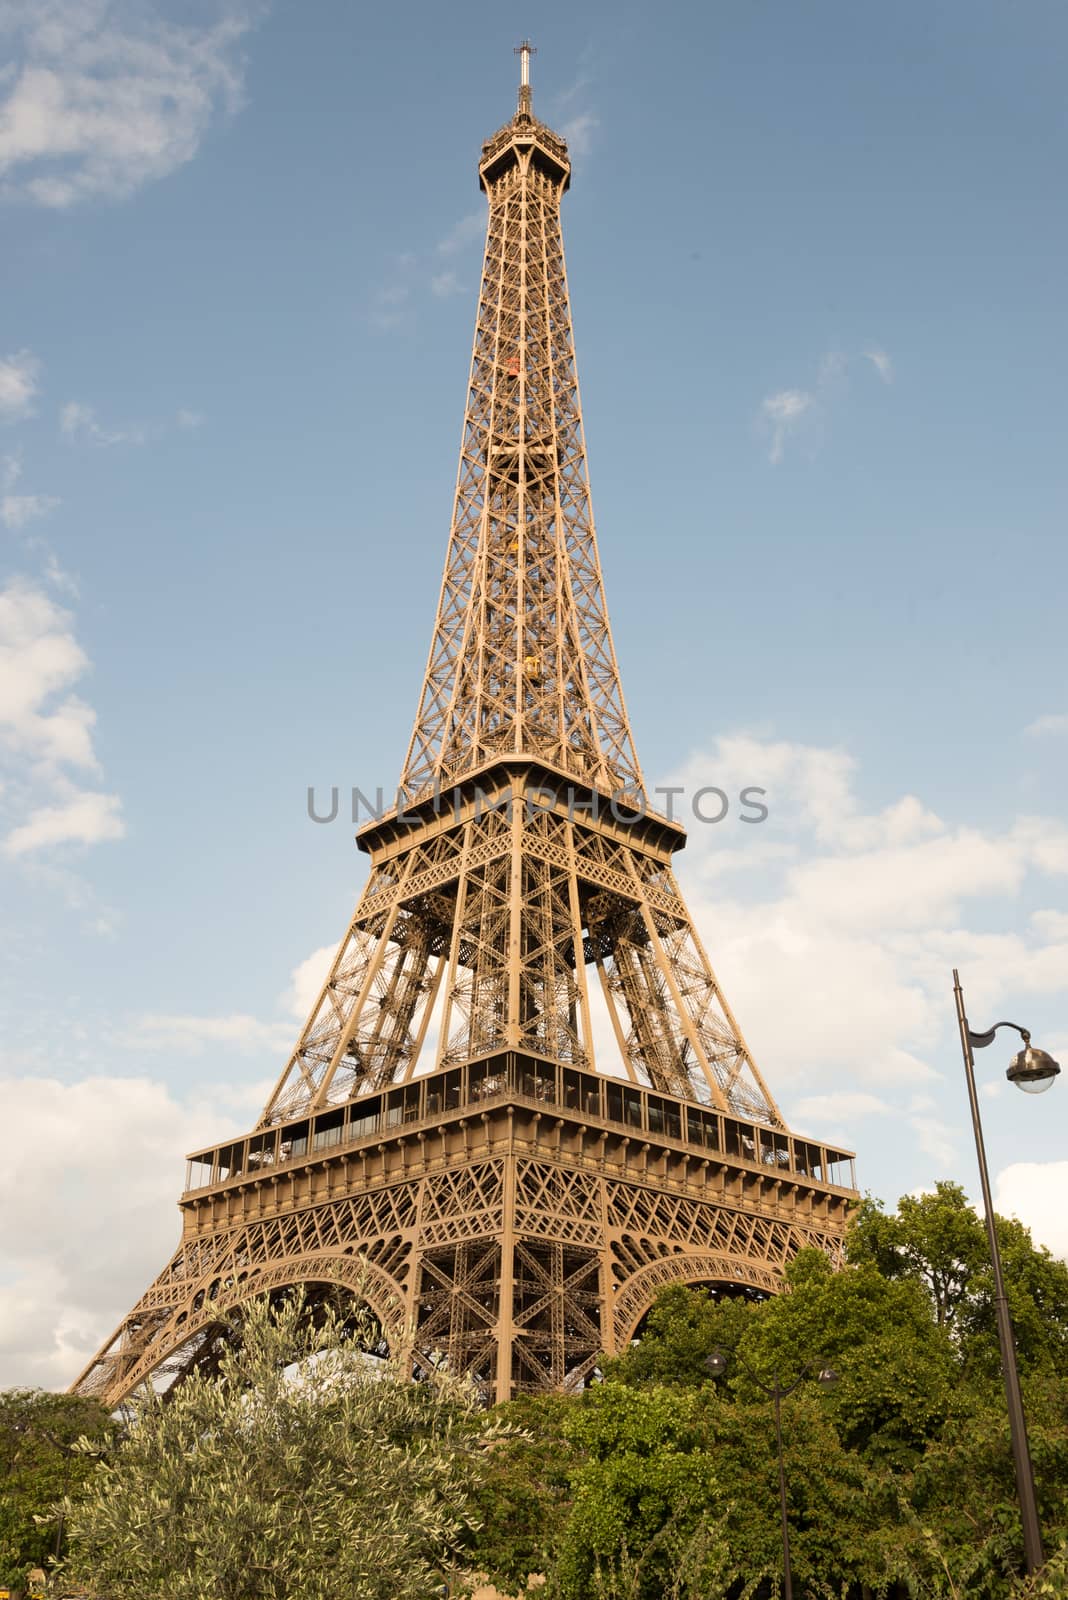 Eiffel tower in Paris by pomemick